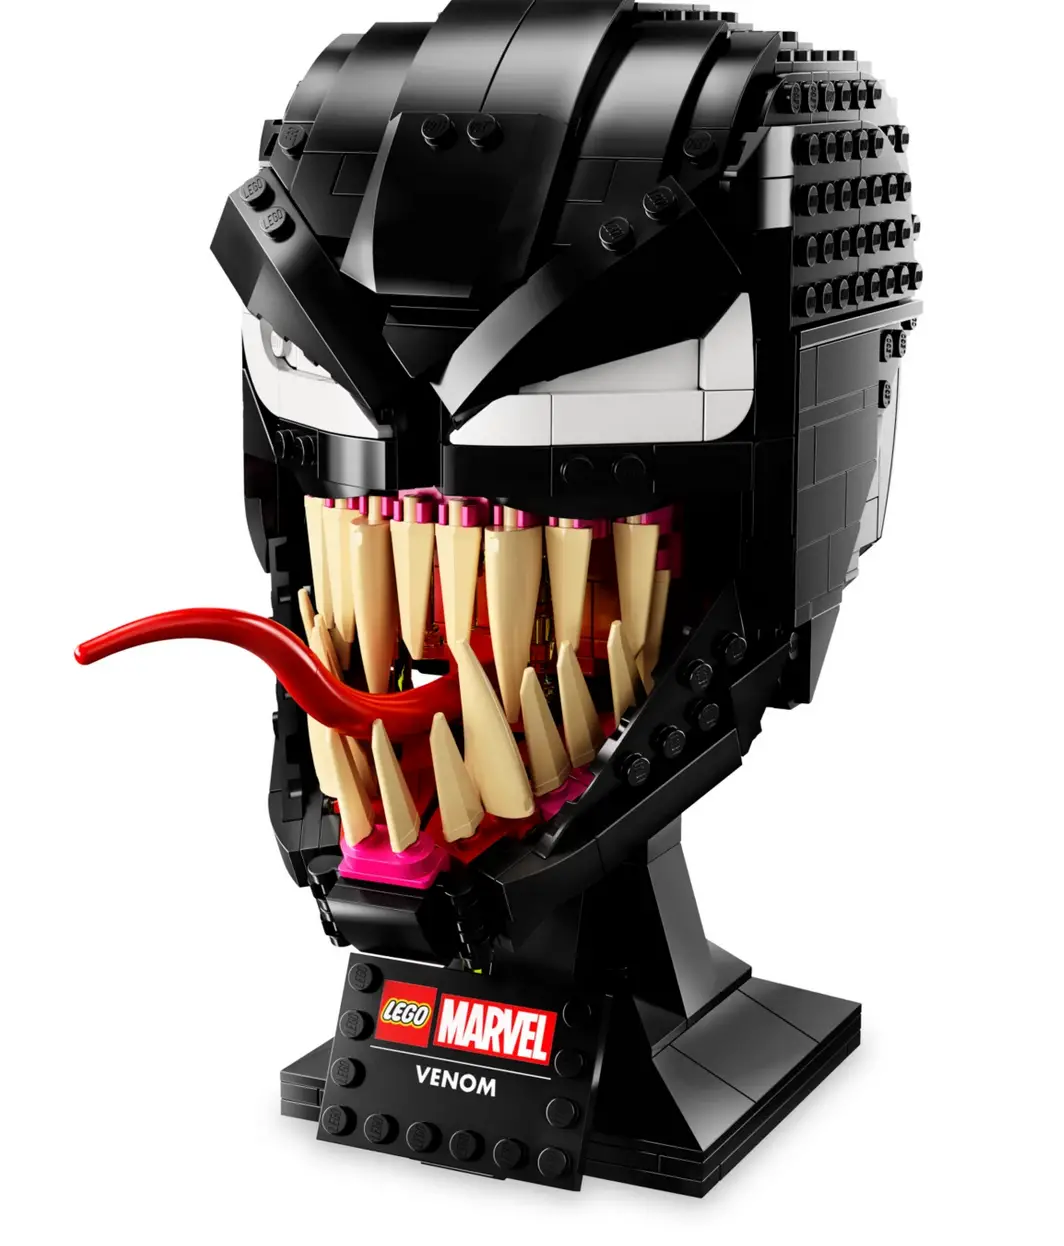 LEGO Marvel Venom Helmet